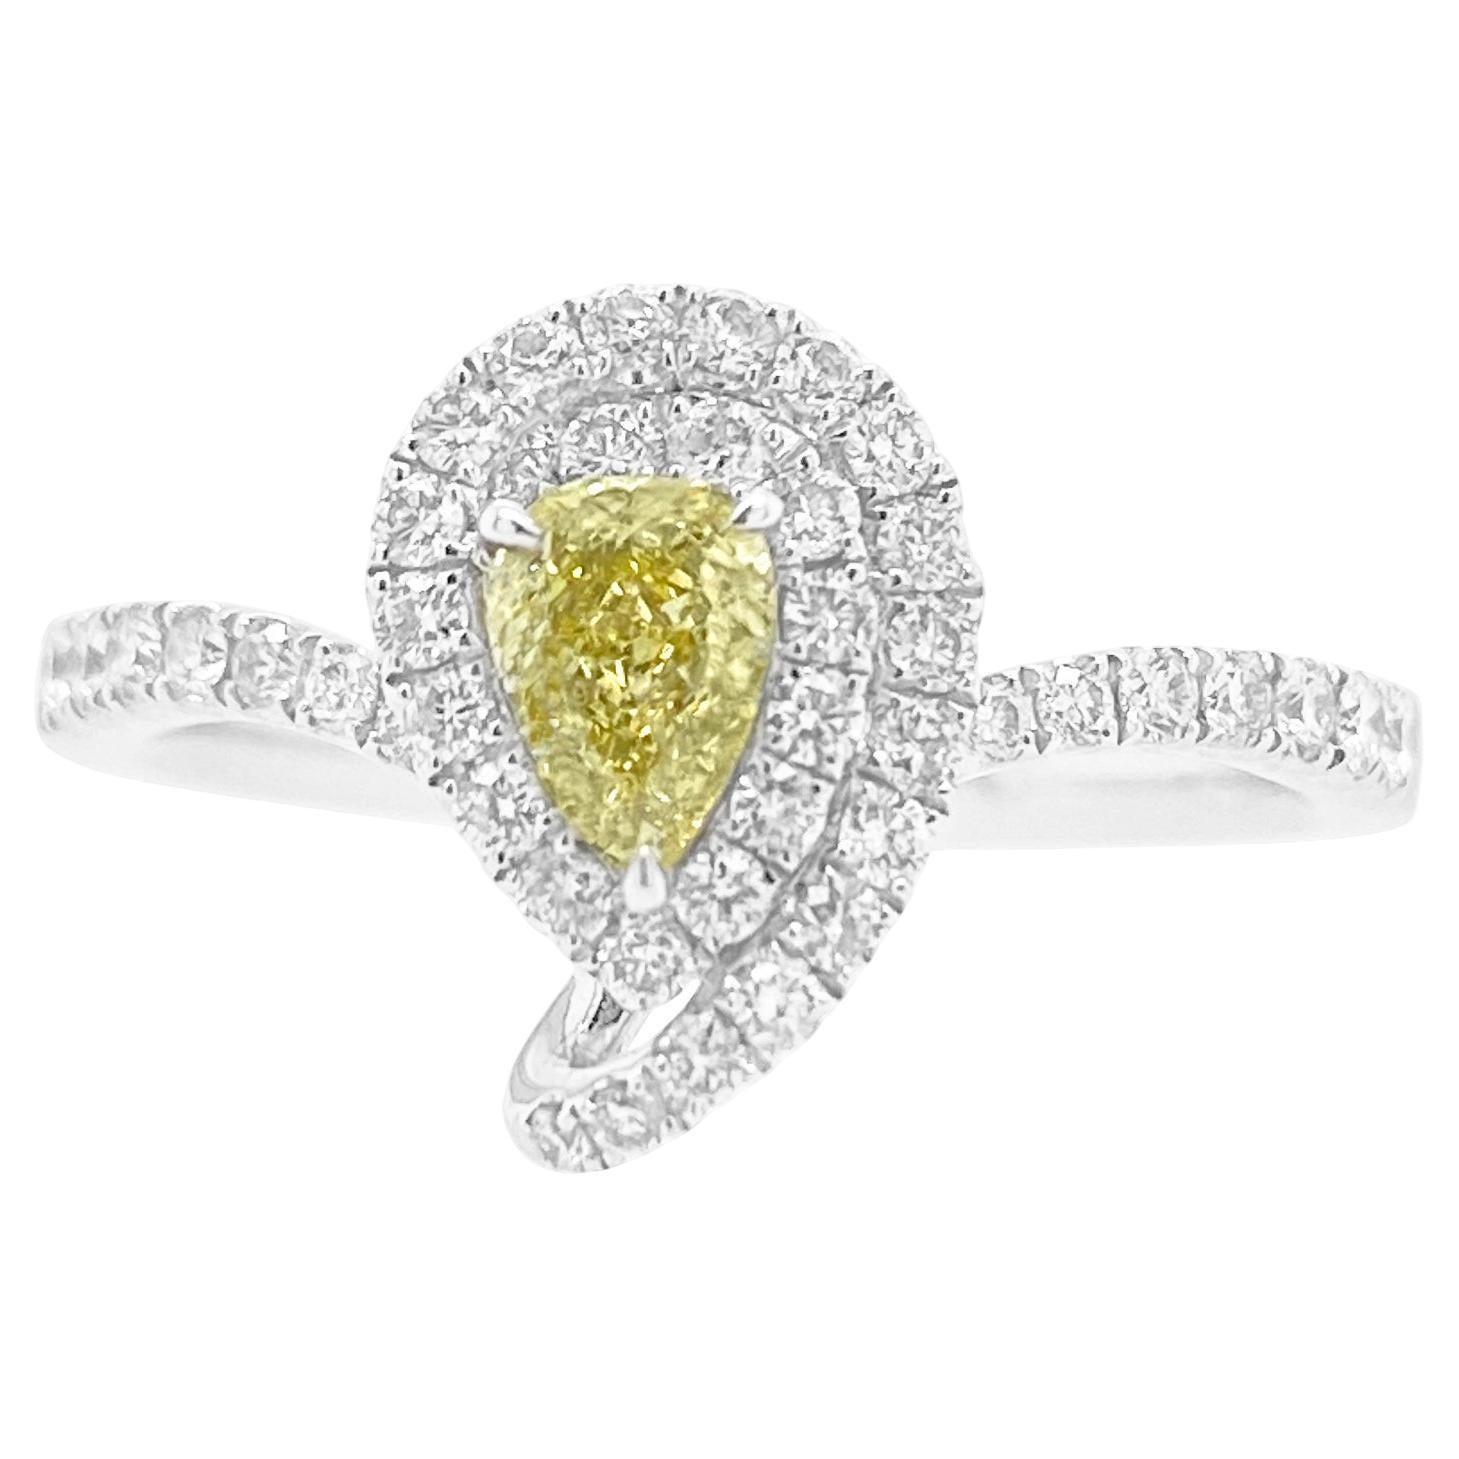 Seltener intensiv gelber und weißer Fancy-Diamantring